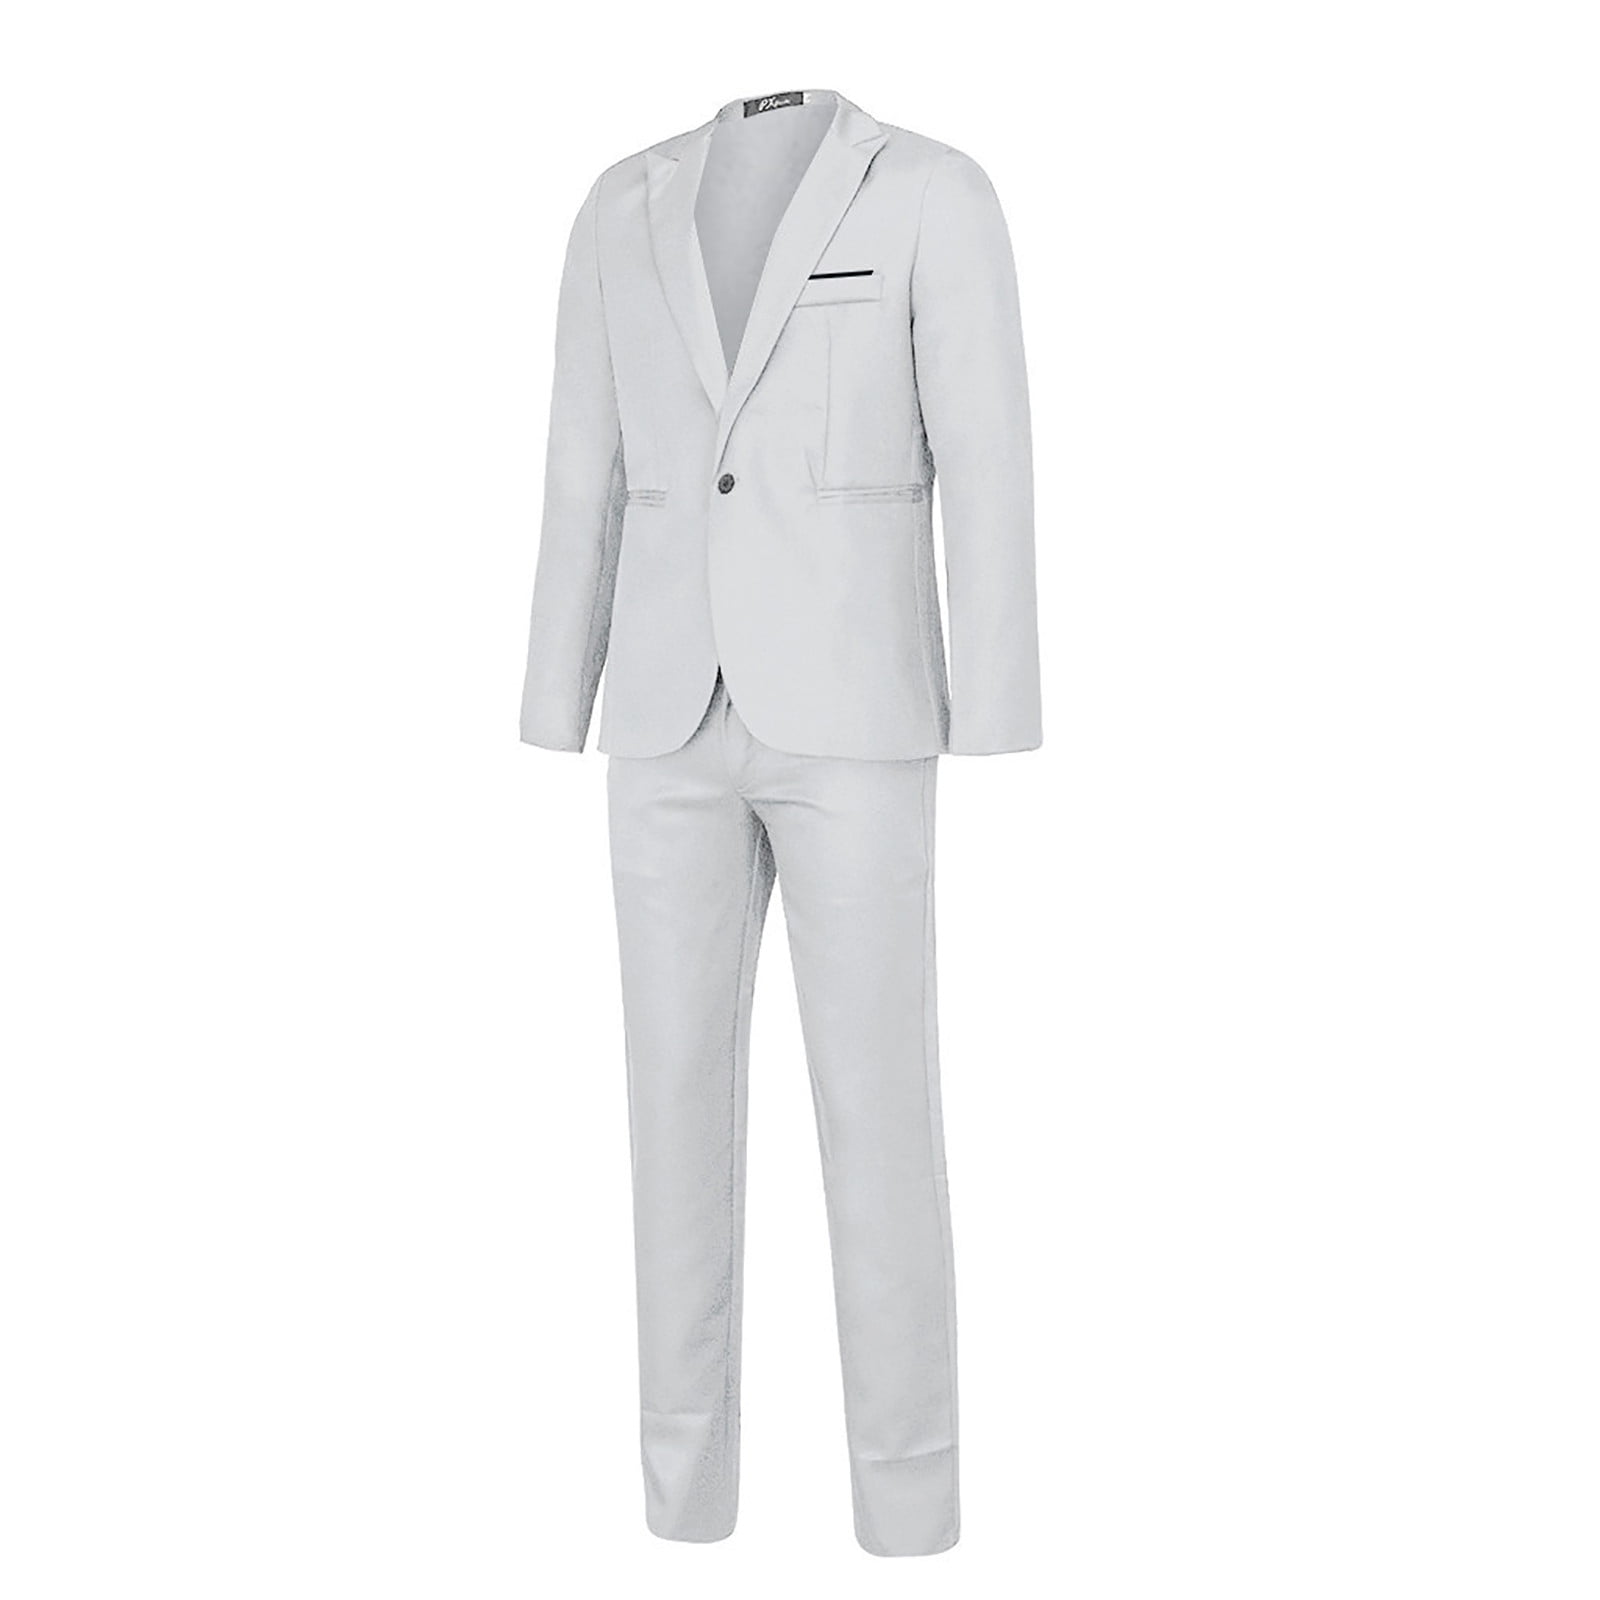 Stamzod Party Wedding Suits For Men Fashion Mens Slim Fit 2 Piece Suit ...